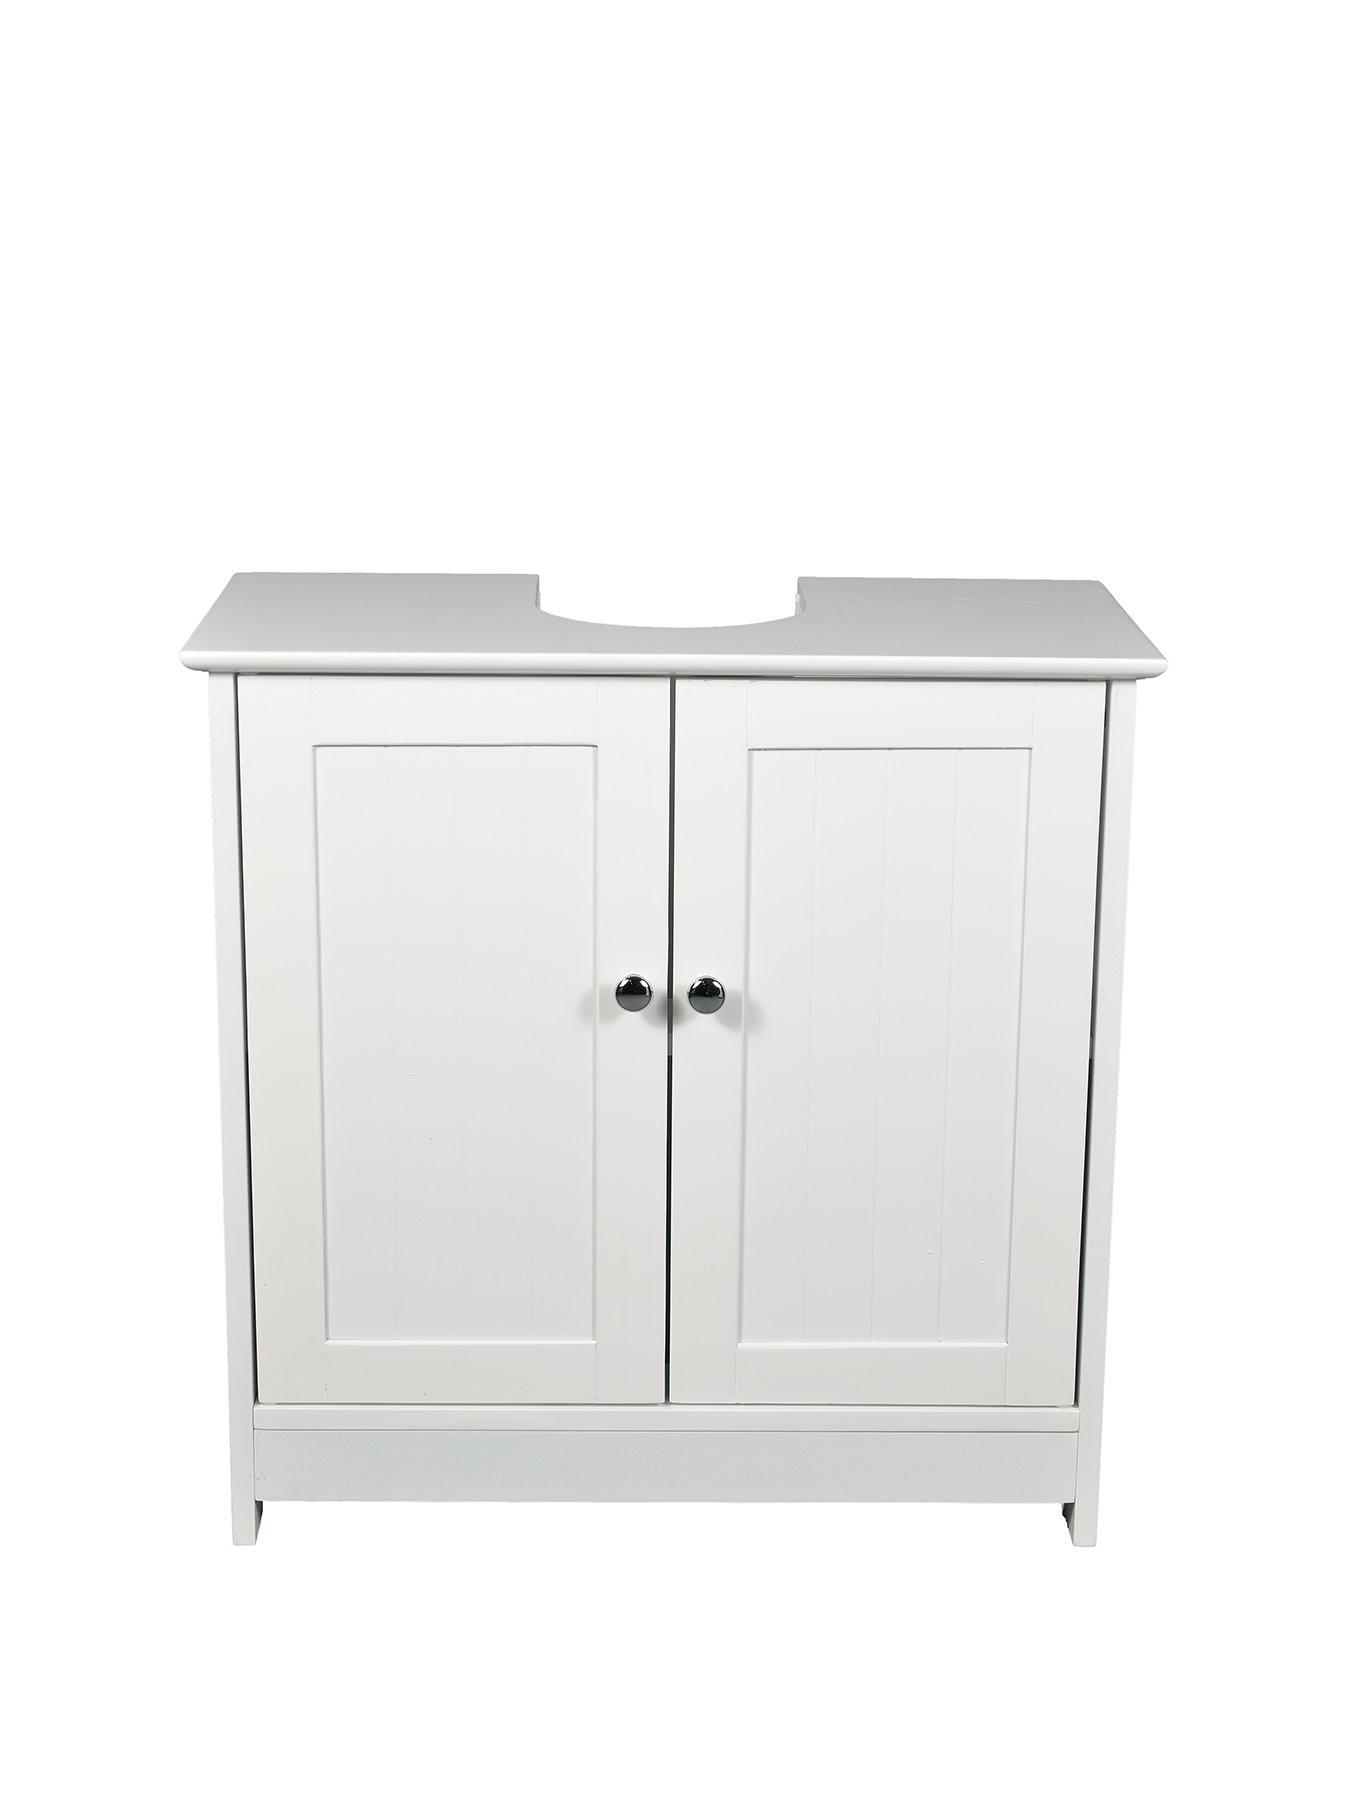 Details about   Modern Bathroom Floor Cabinet Storage Home w/Door Adjustable Shelf Free Standing 